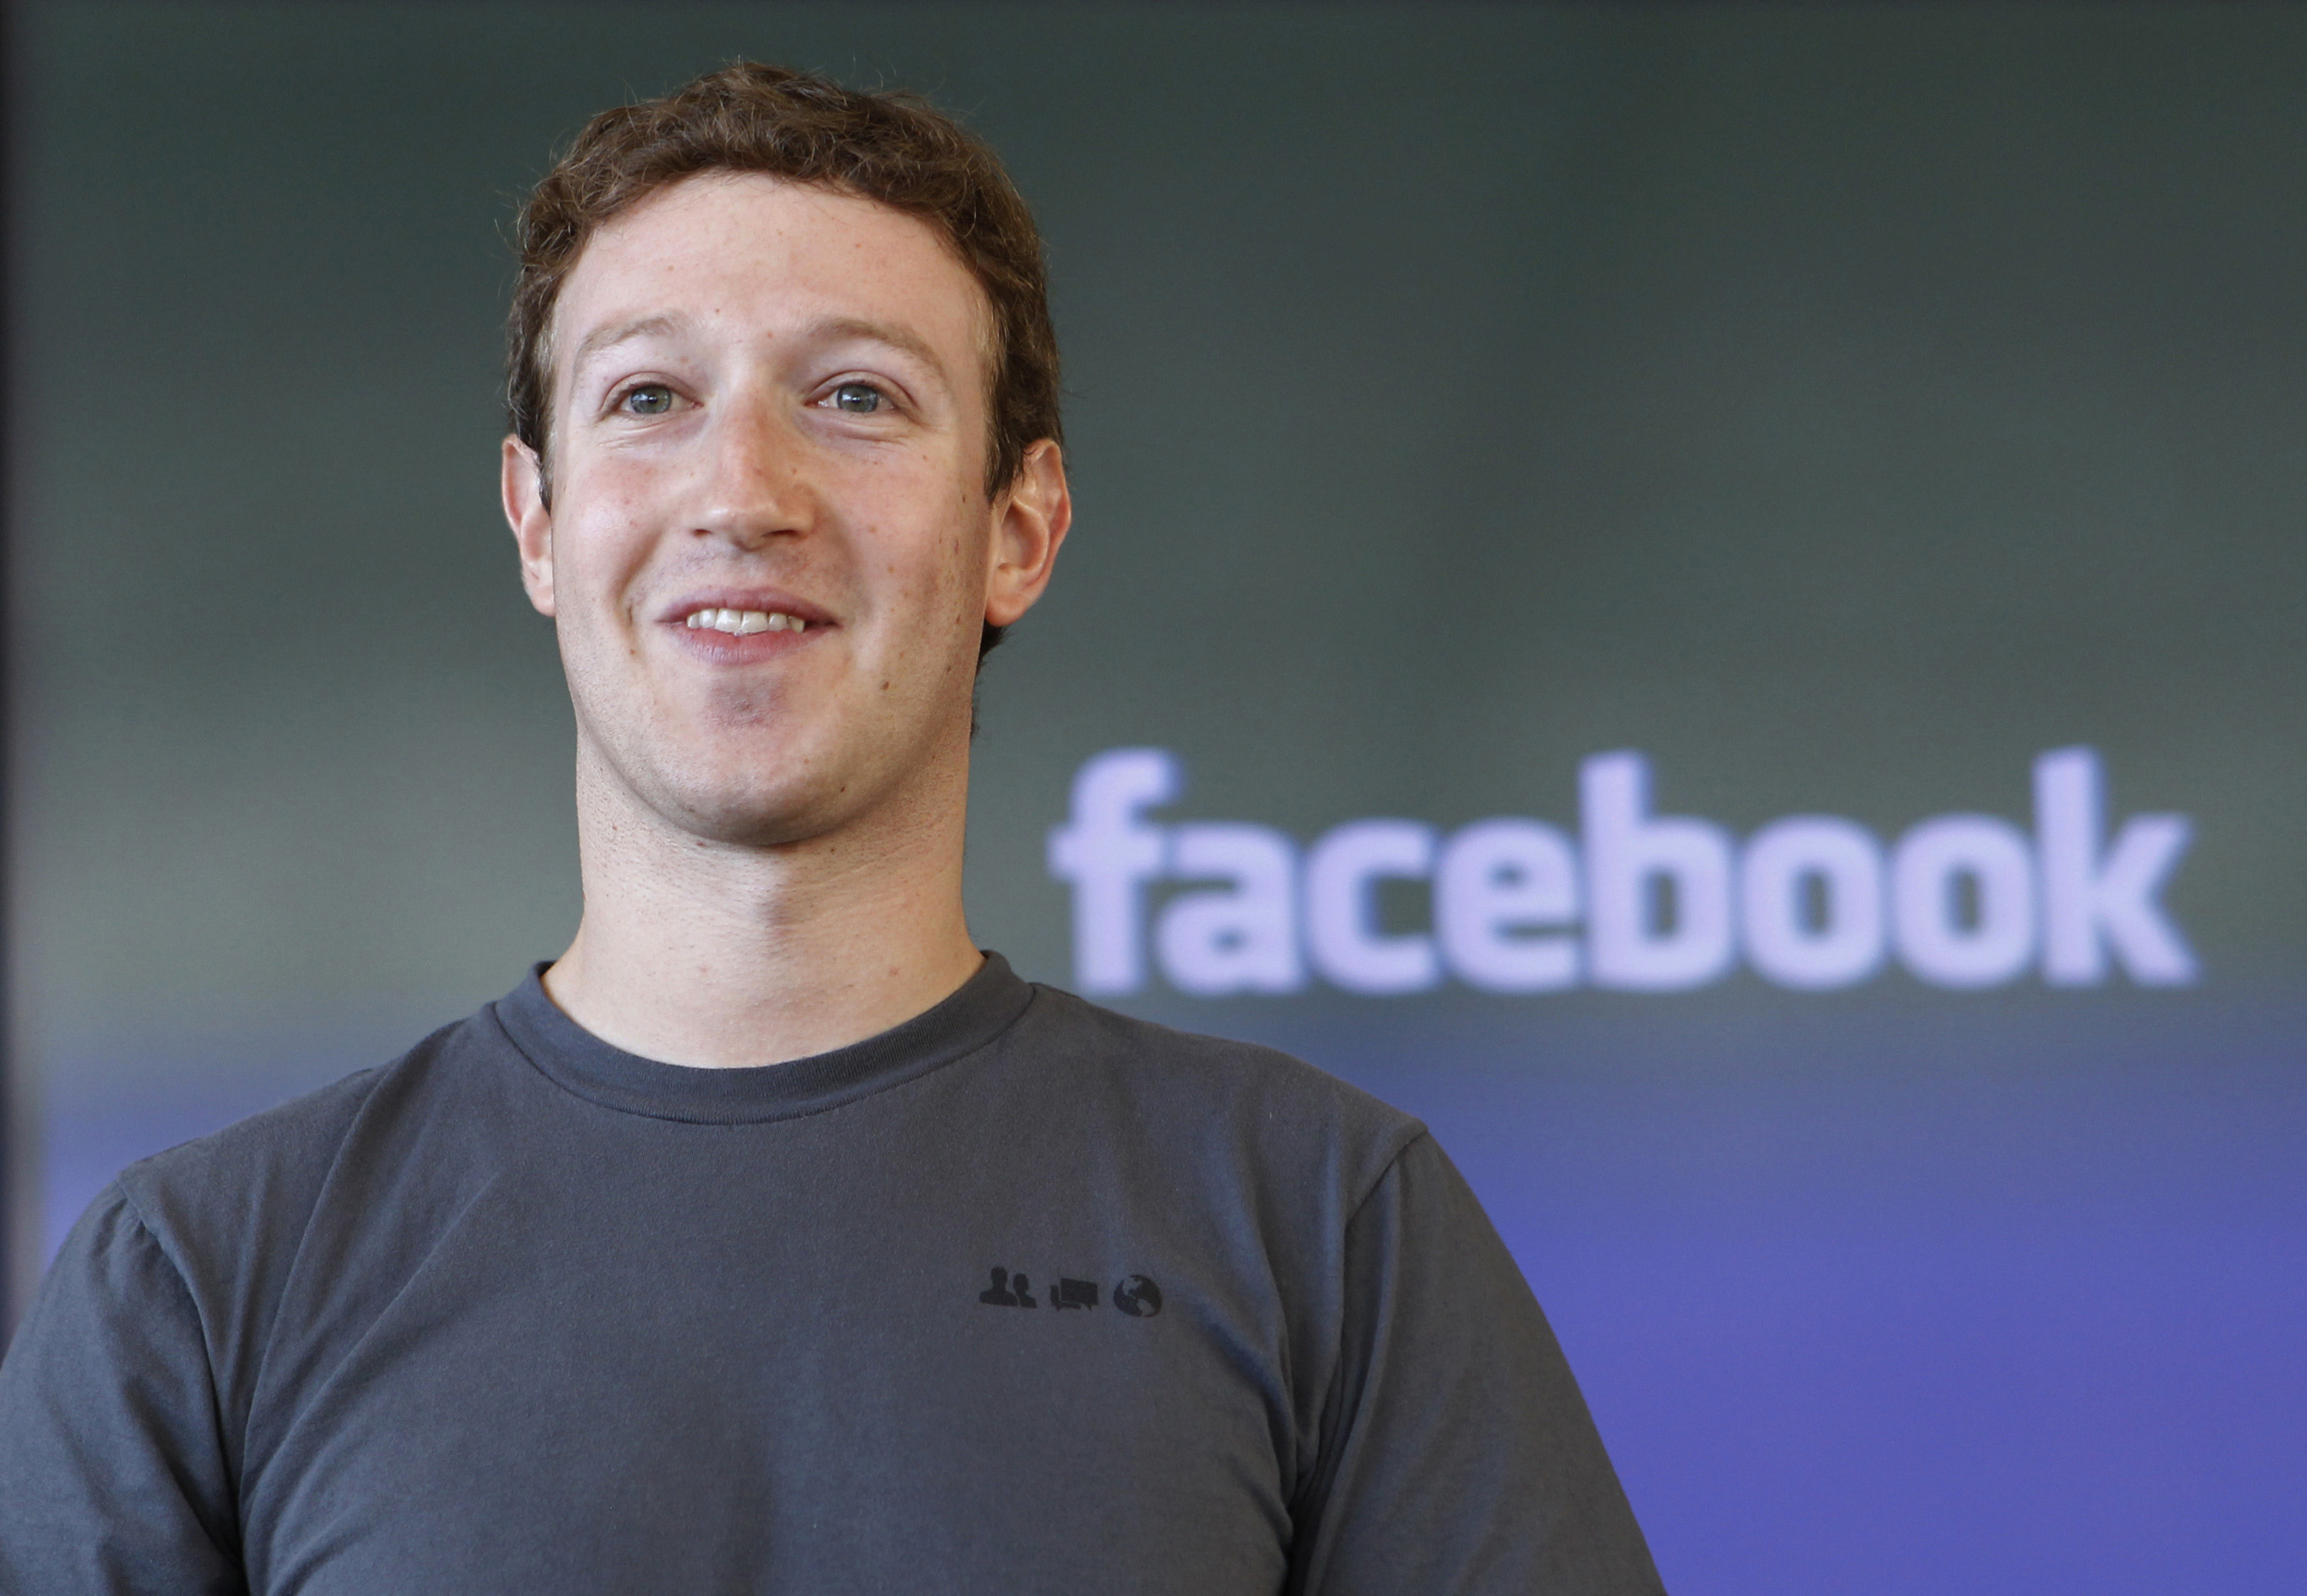 Facebooks grundare Mark Zuckerberg svarar på kritiken efter att Safety Check infördes efter dåden i Paris, men inte i Beirut innan.